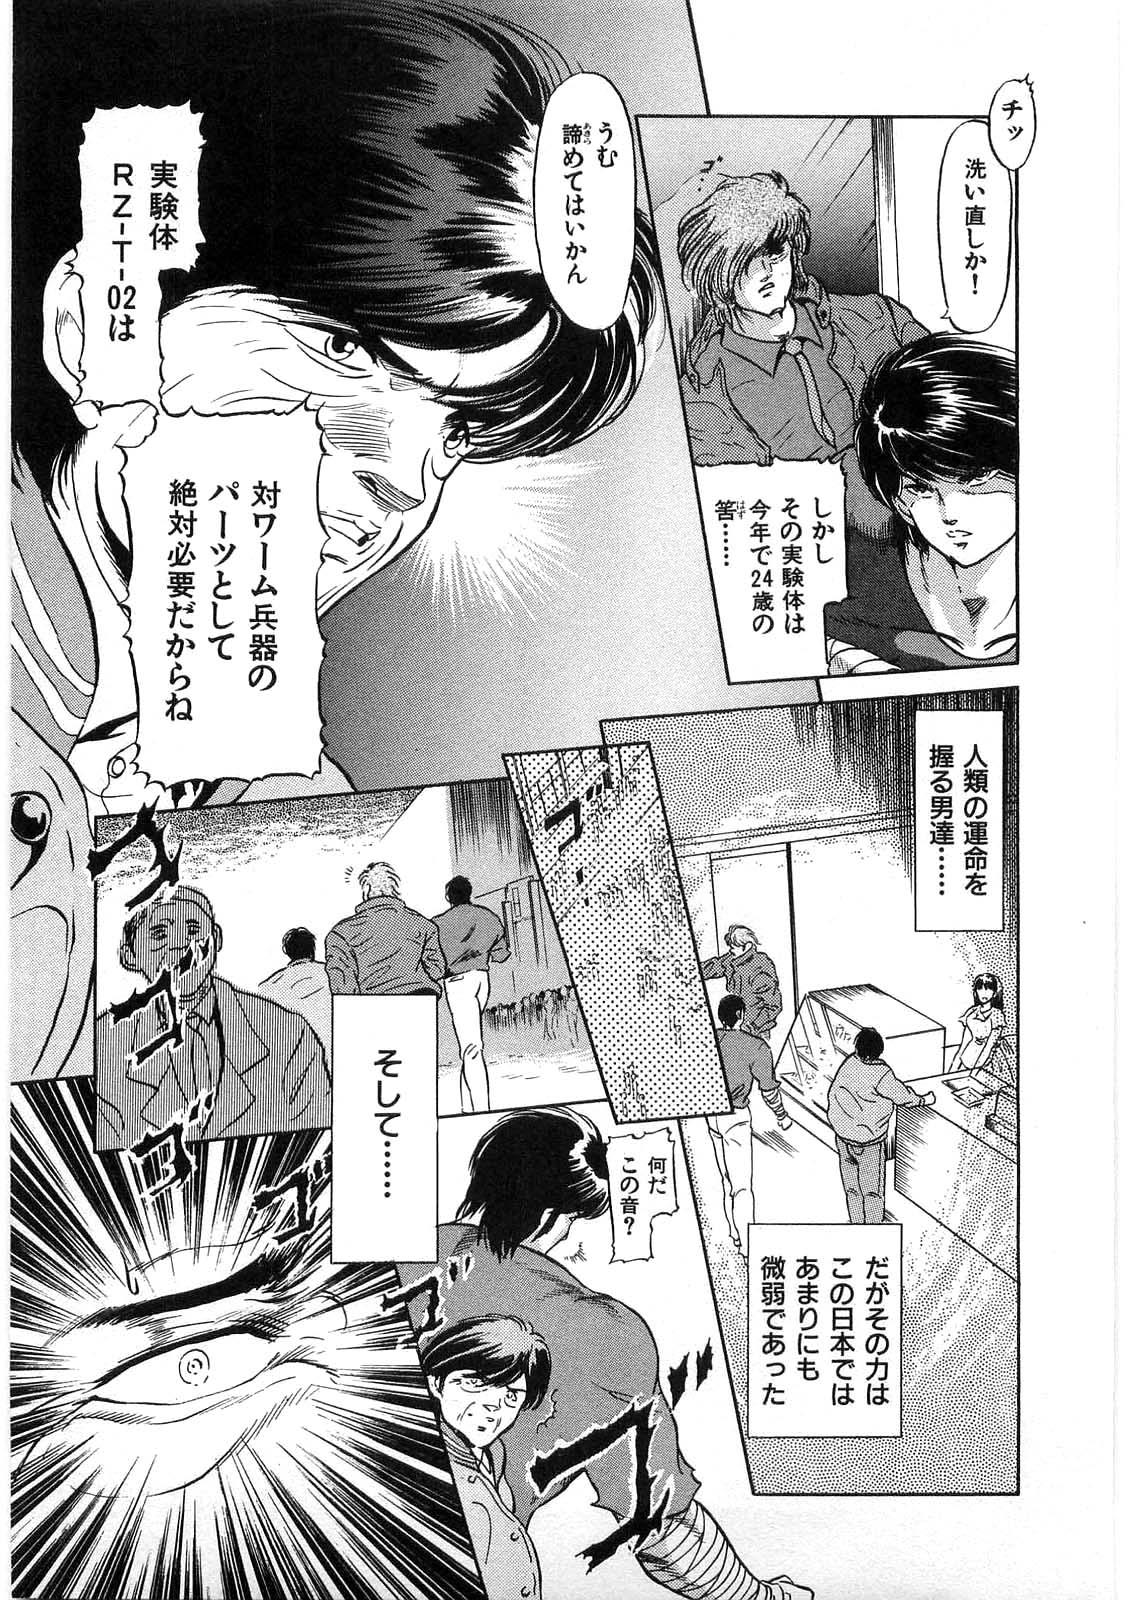 [Minazuki Ayu, Mishouzaki Yuu, Zerono Kouji] Juu no Rettou (Isle of Beasts) Vol.1 9